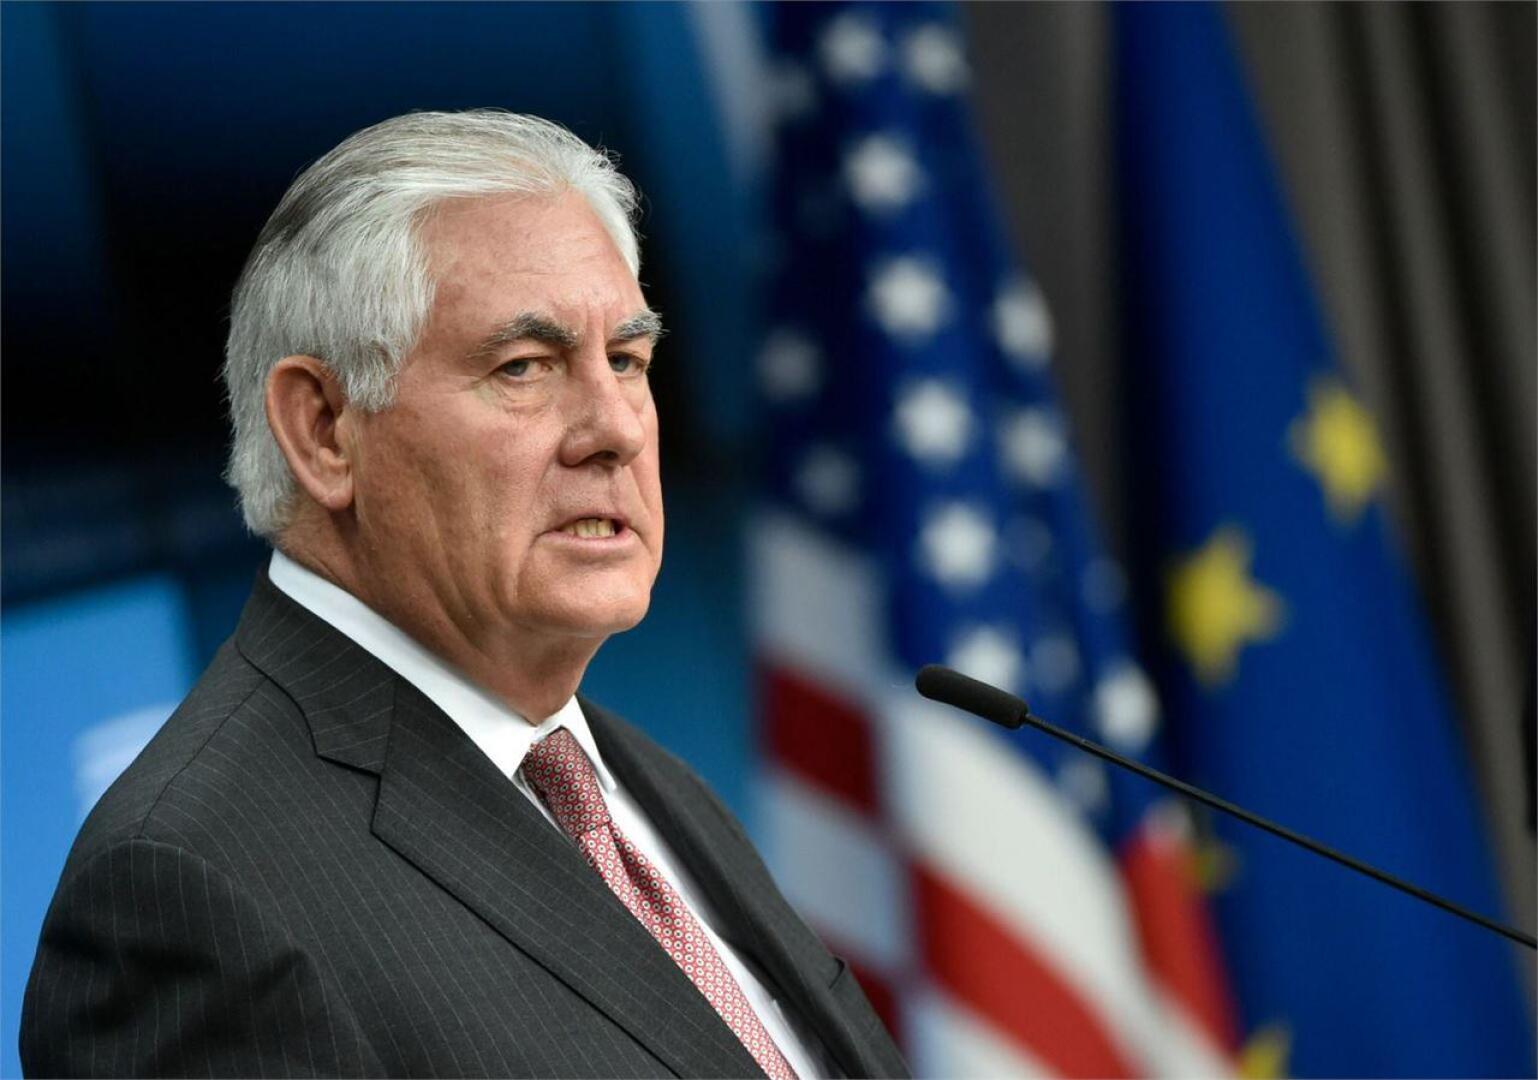  Yhdysvaltojen ulkoministeri Rex Tillerson sanoi aikaisemmin tällä viikolla, että Yhdysvallat on valmis keskustelemaan Pohjois-Korean kanssa ilman ennakkoehtoja, minkä jotkin asiantuntijat tulkitsivat painostuksen lieventämiseksi. LEHTIKUVA/AFP